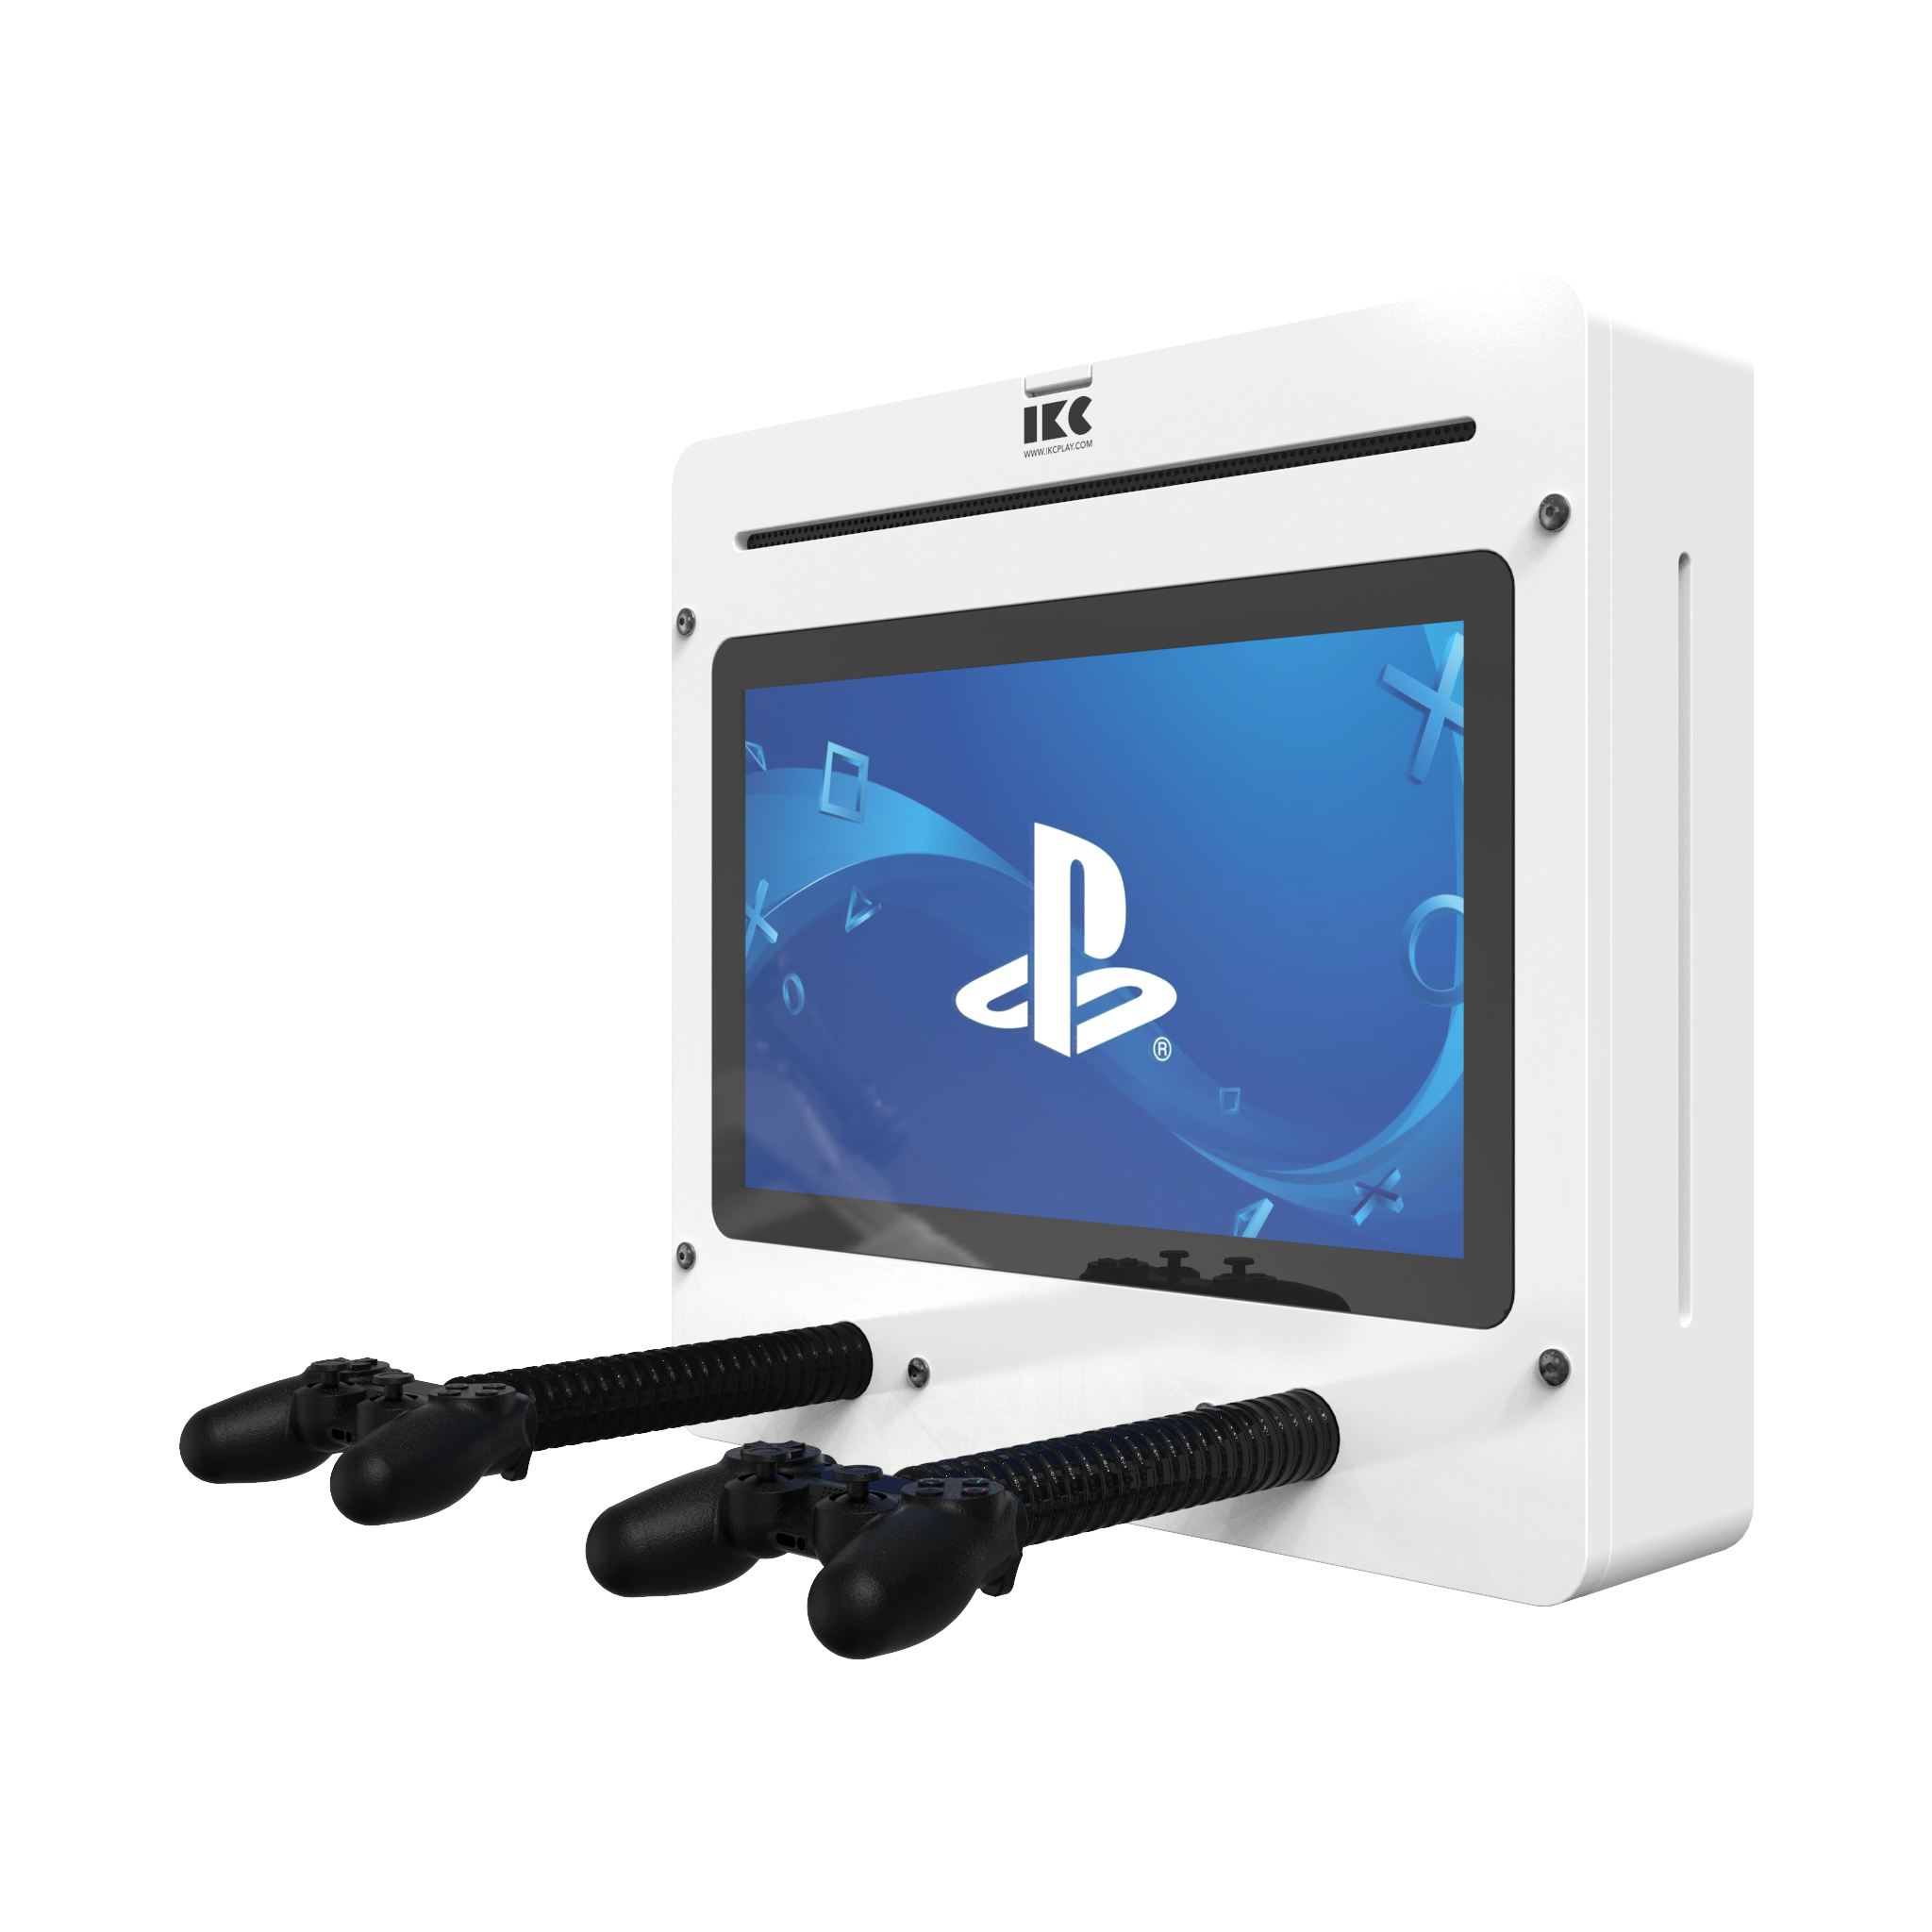 L'image montre un système de jeu interactif Delta 21 inch Playstation